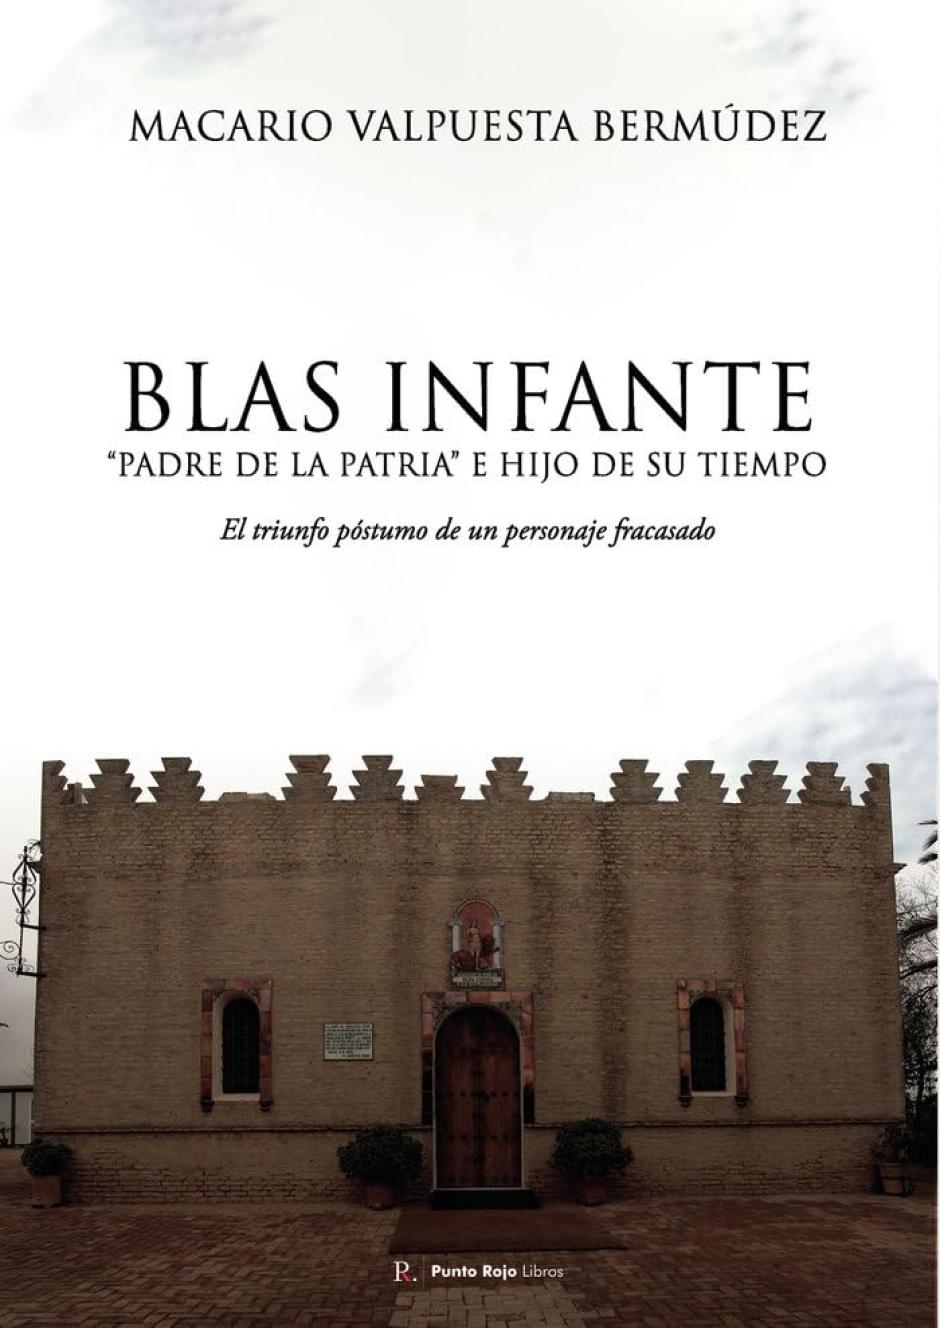 Portada del libro 'Blas Infante, "Padre de la patria" e hijo de su tiempo', de Macario Valpuesta